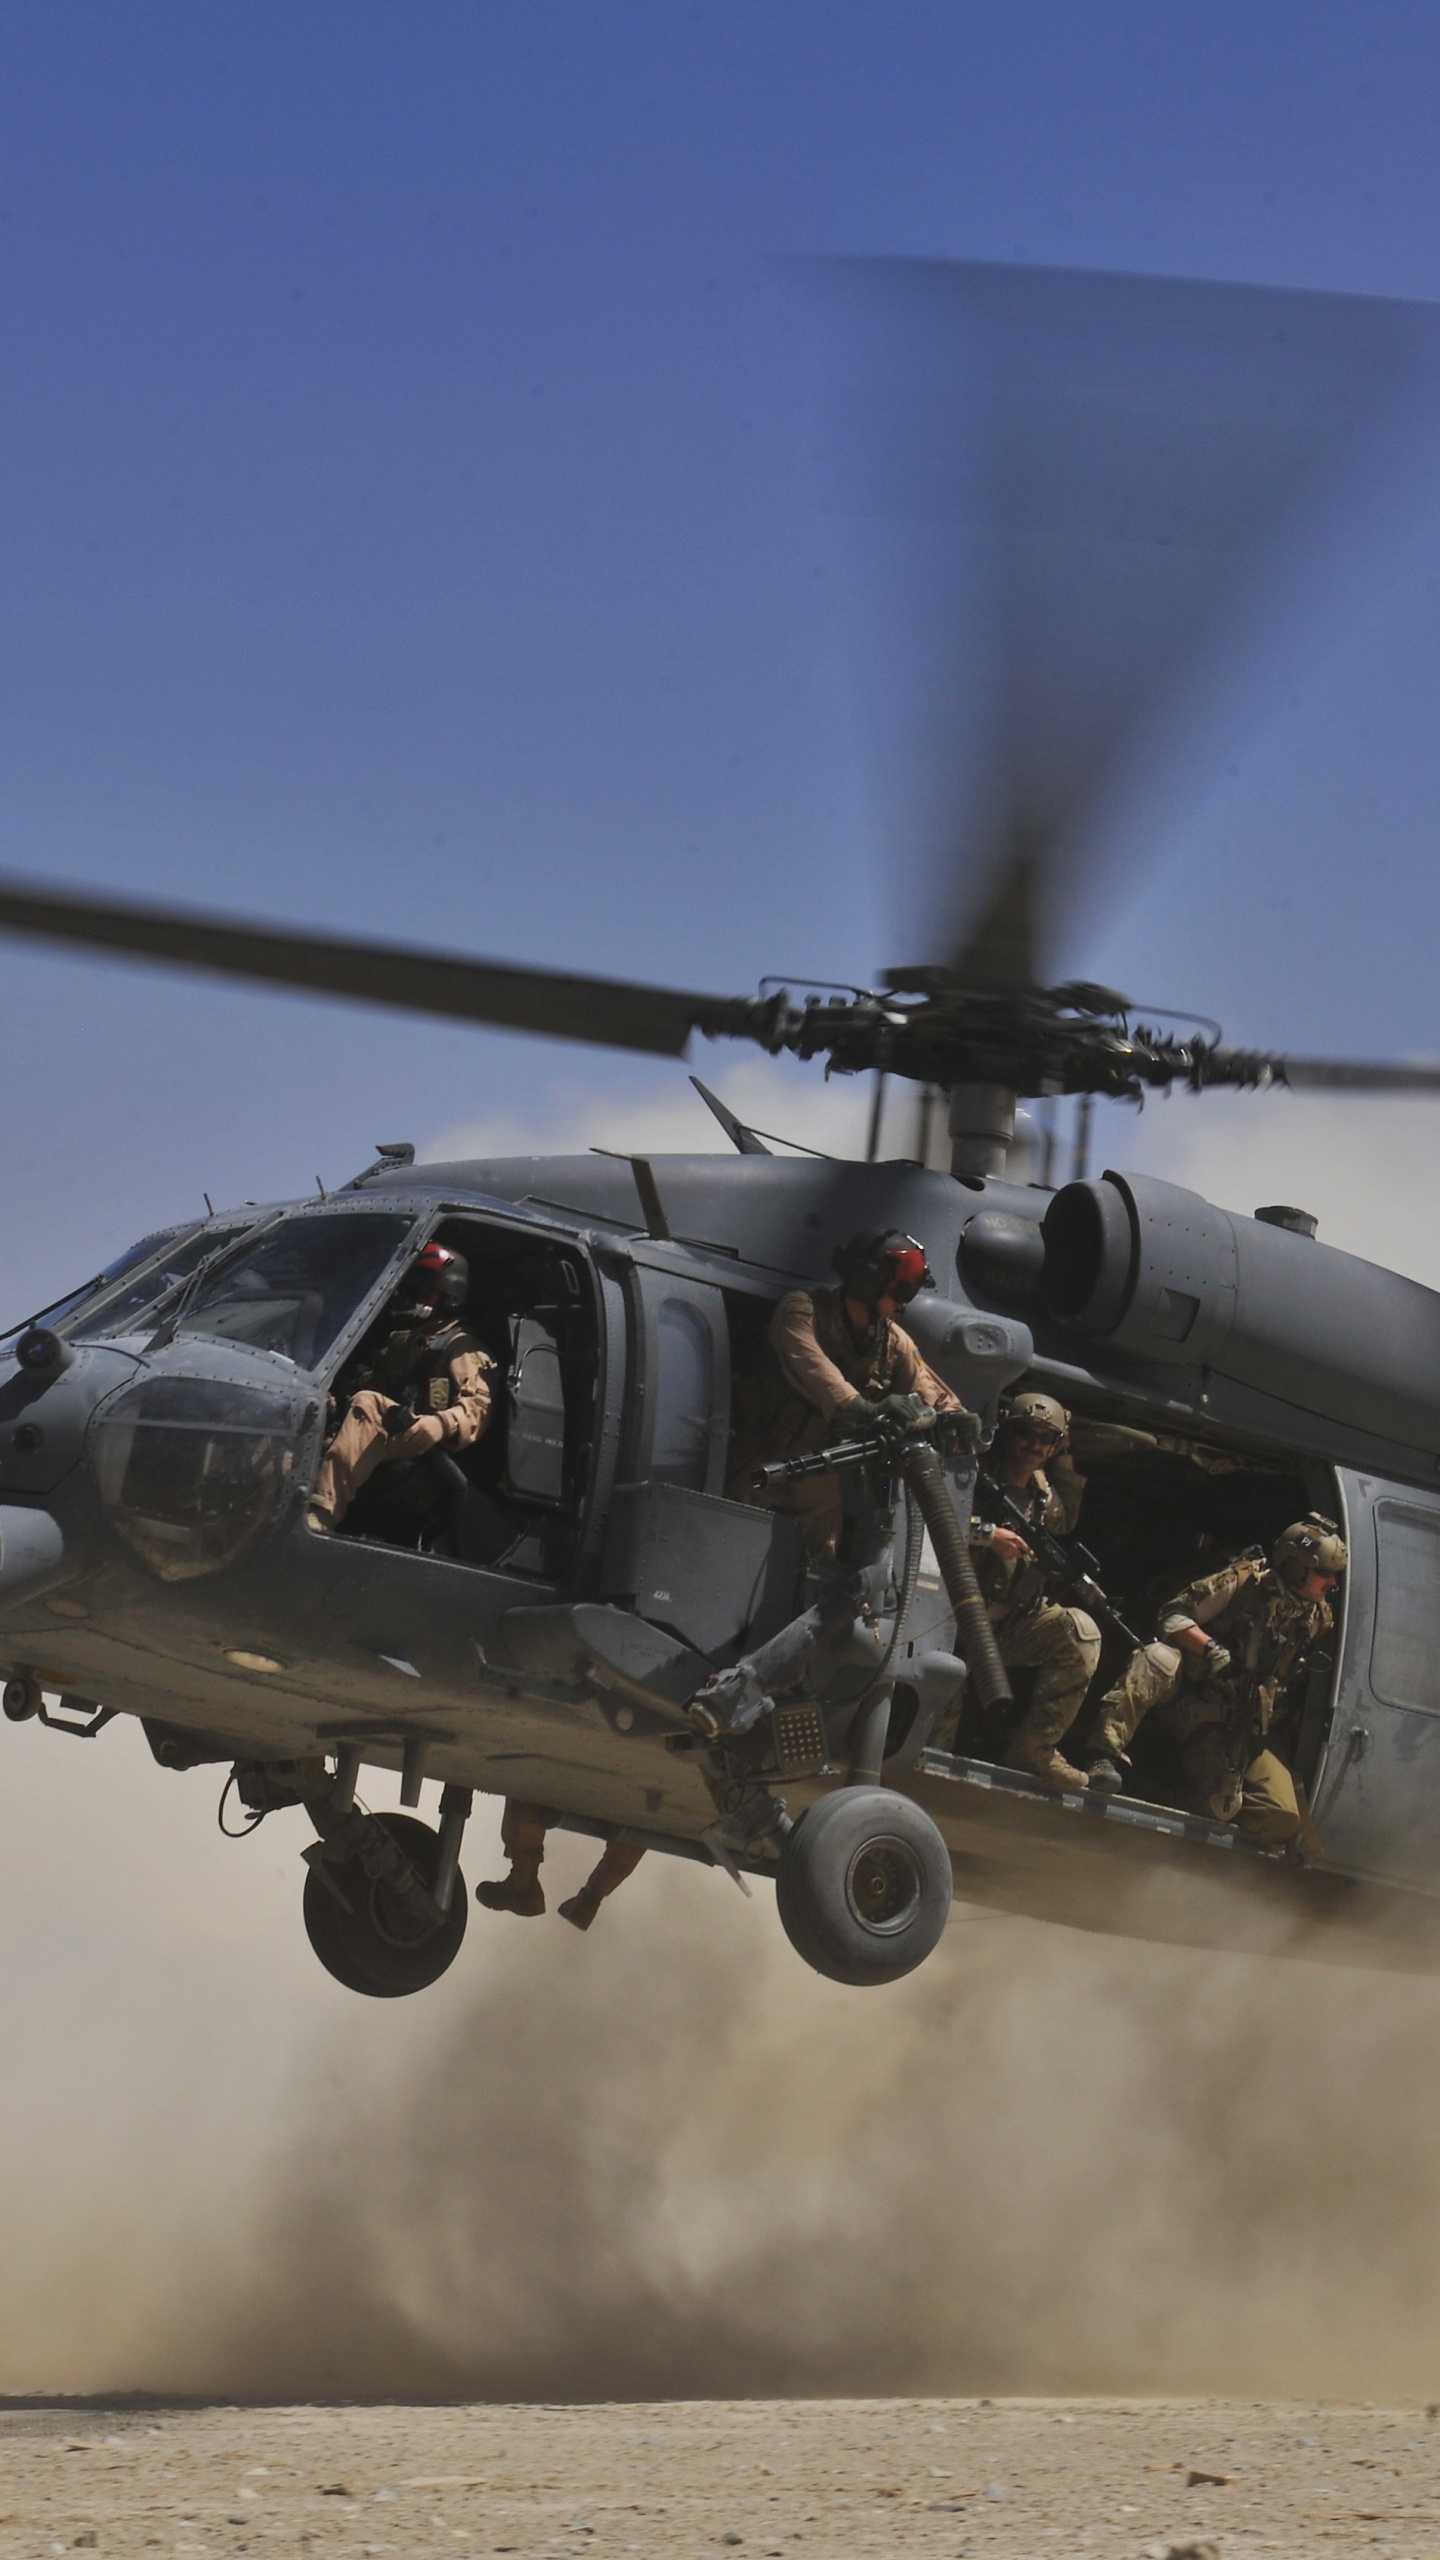 Helicóptero Negro en el Aire Durante el Día. Wallpaper in 1440x2560 Resolution